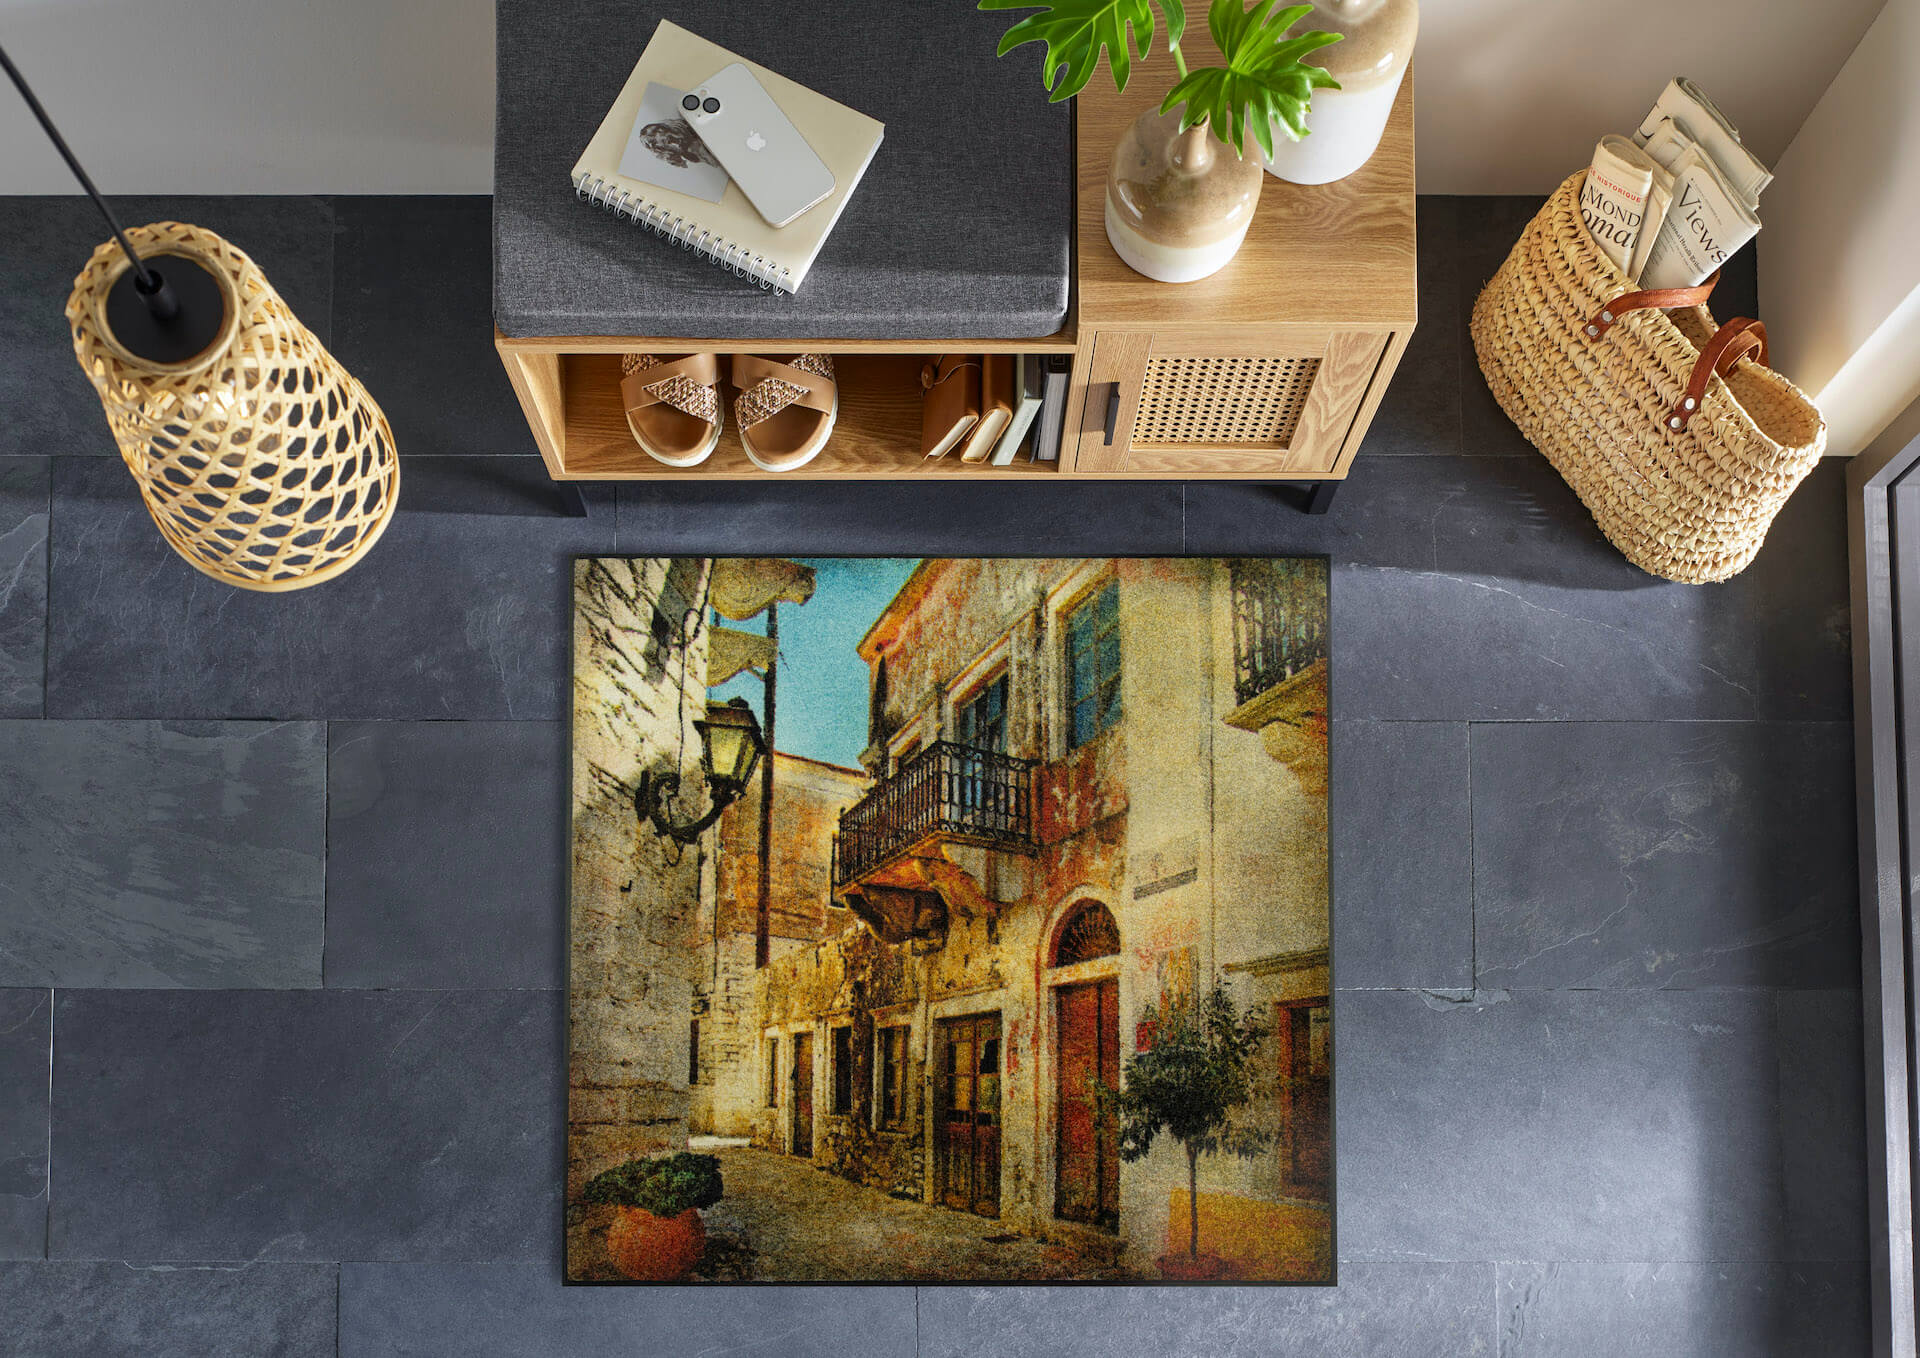 Fußmatte Picturesque Greece, Wash & Dry Design, 085 x 085 cm, mehrfarbig, Interieurbild